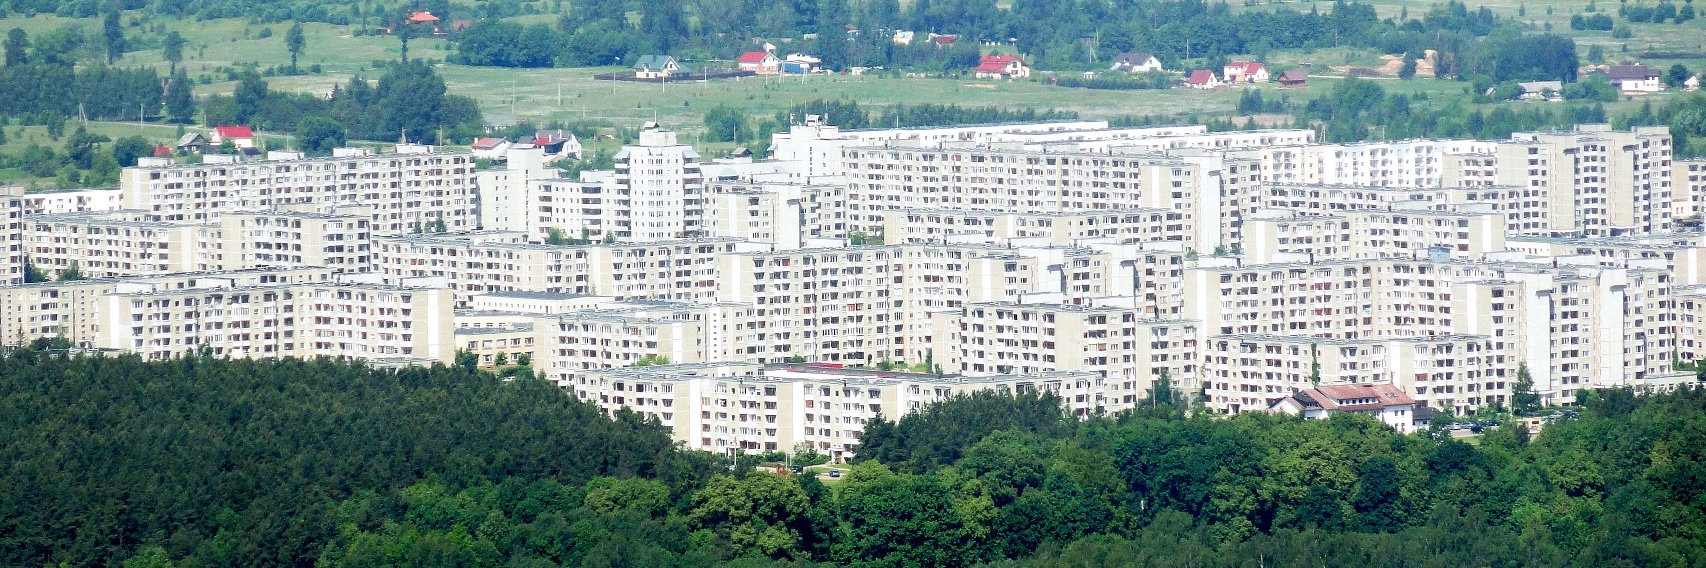 vilnius communist apartments